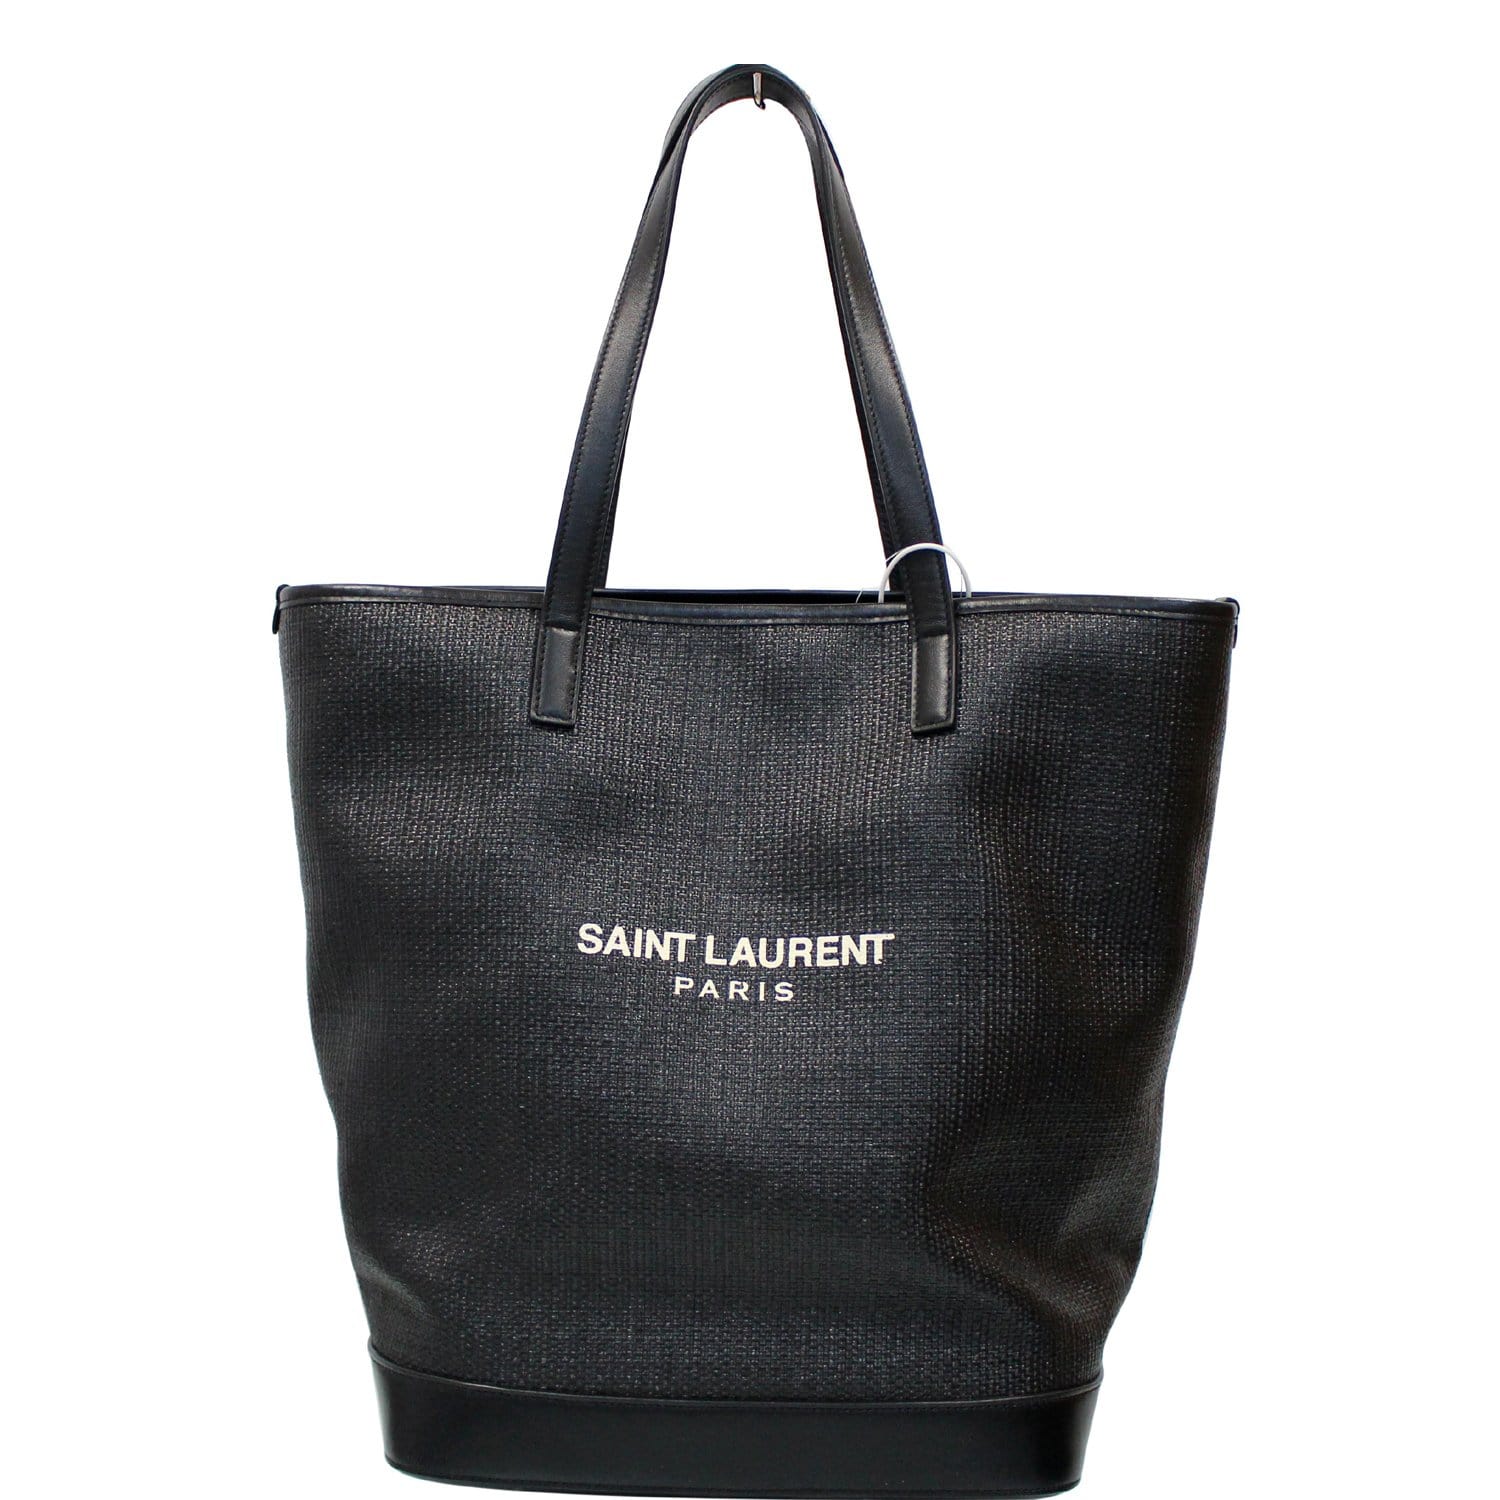 Yves Saint Laurent Raspail Cascade Canvas Tote Bag – The Foxy Shopper